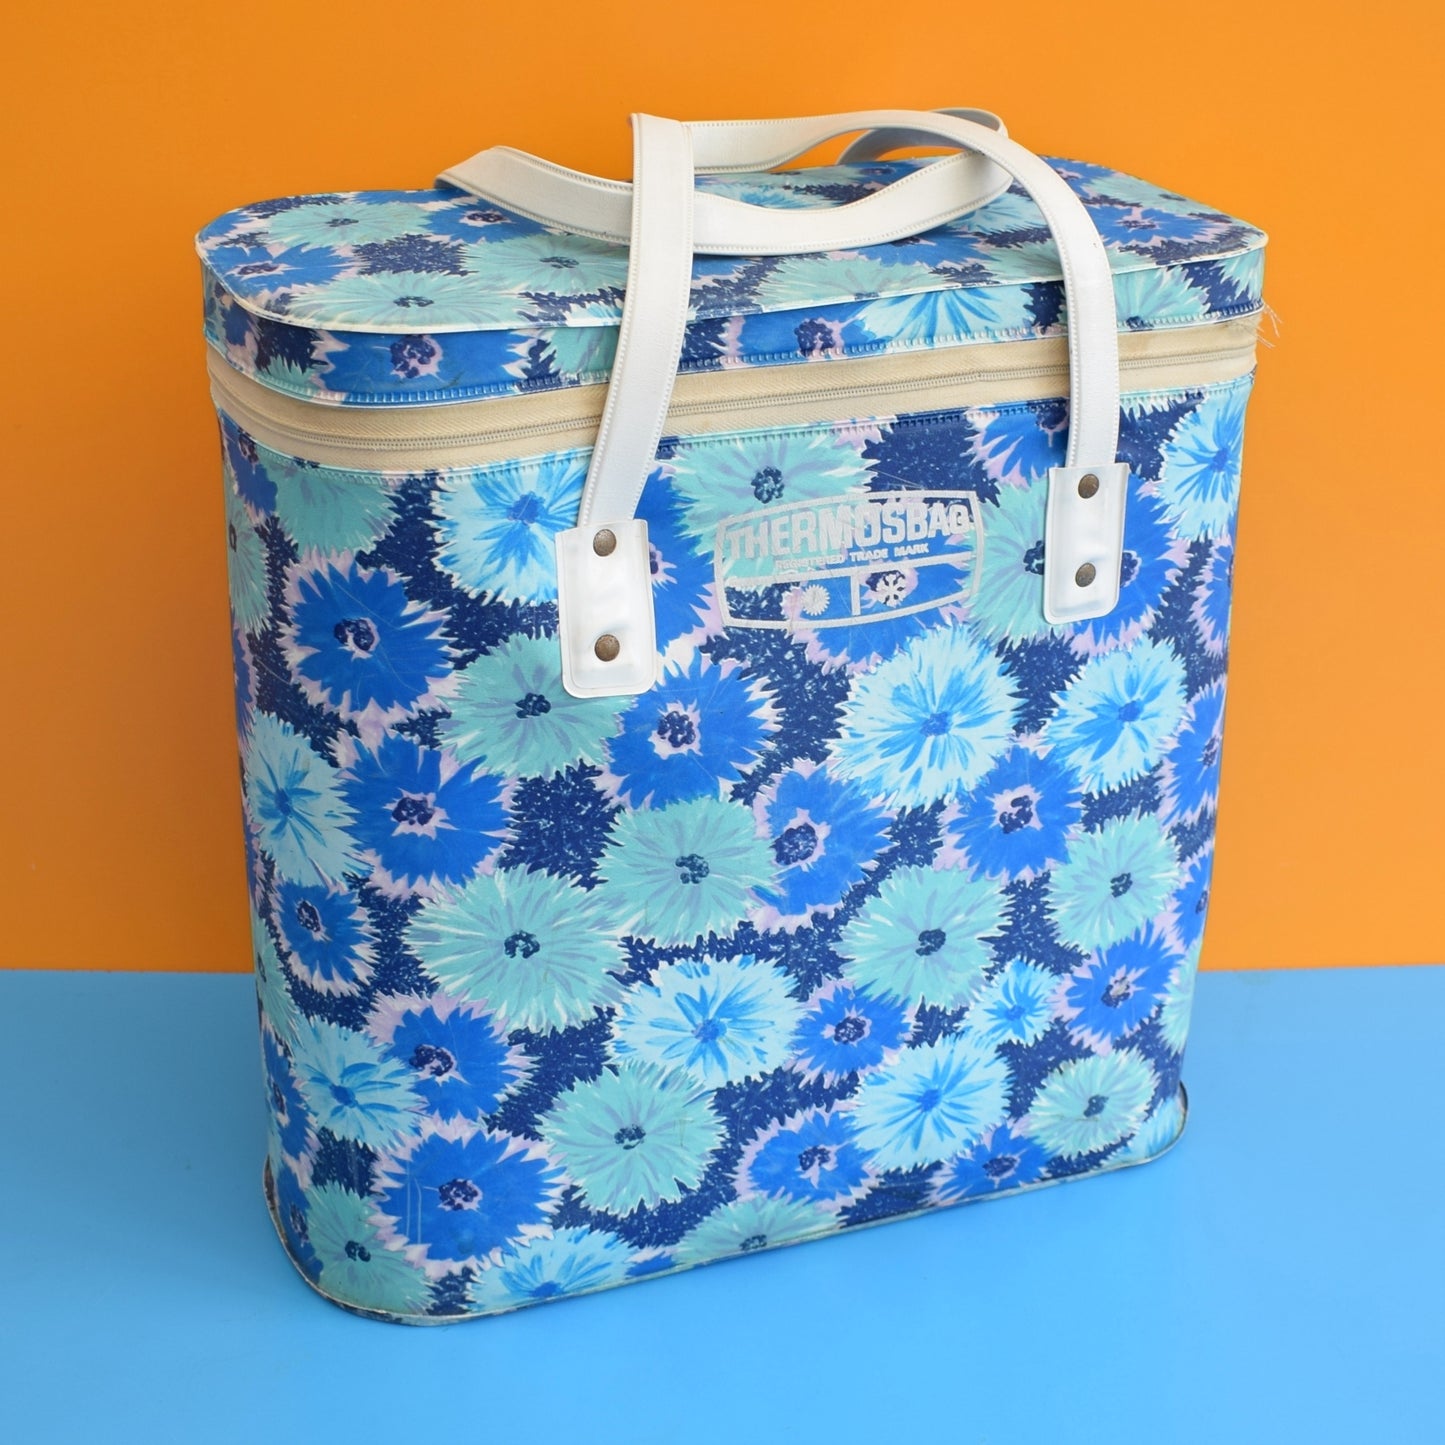 Vintage 1960s Cool Bag - Flower Power - Blue